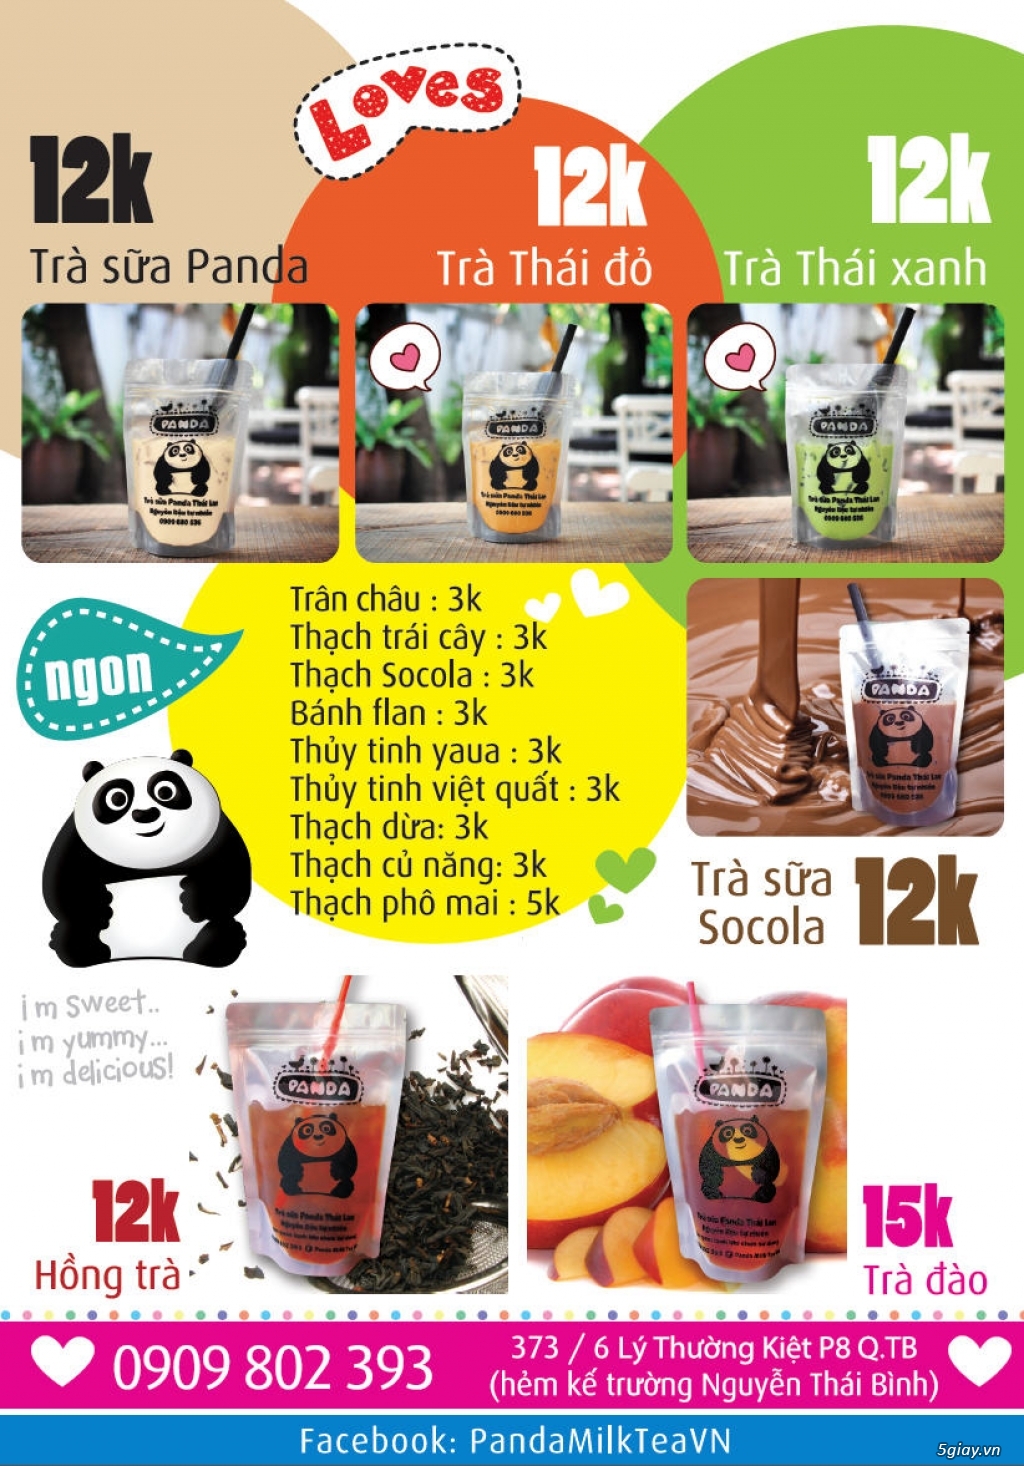 Trà sữa Thái Lan Panda thơm ngon tự nhiên, súp cua, khoai tây lắc - 2